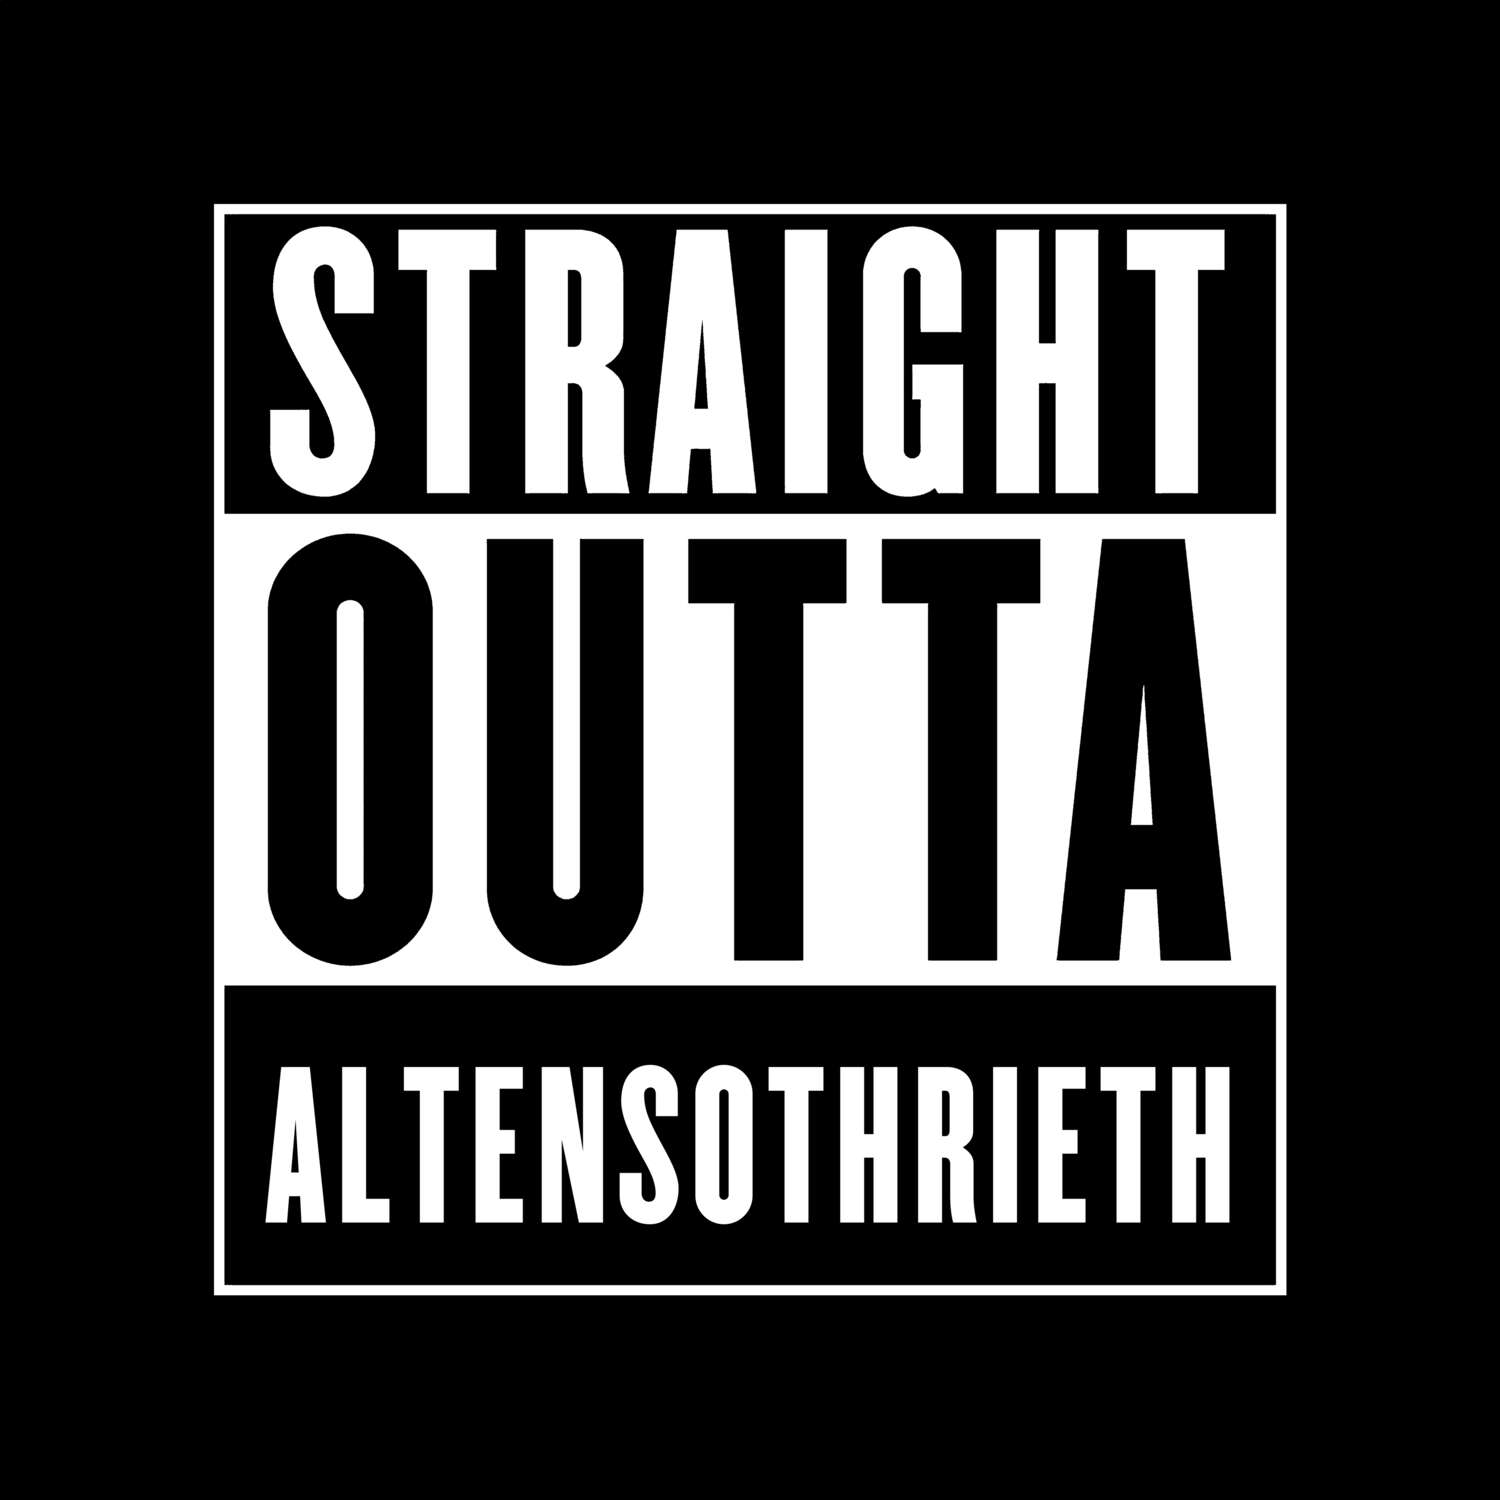 Altensothrieth T-Shirt »Straight Outta«